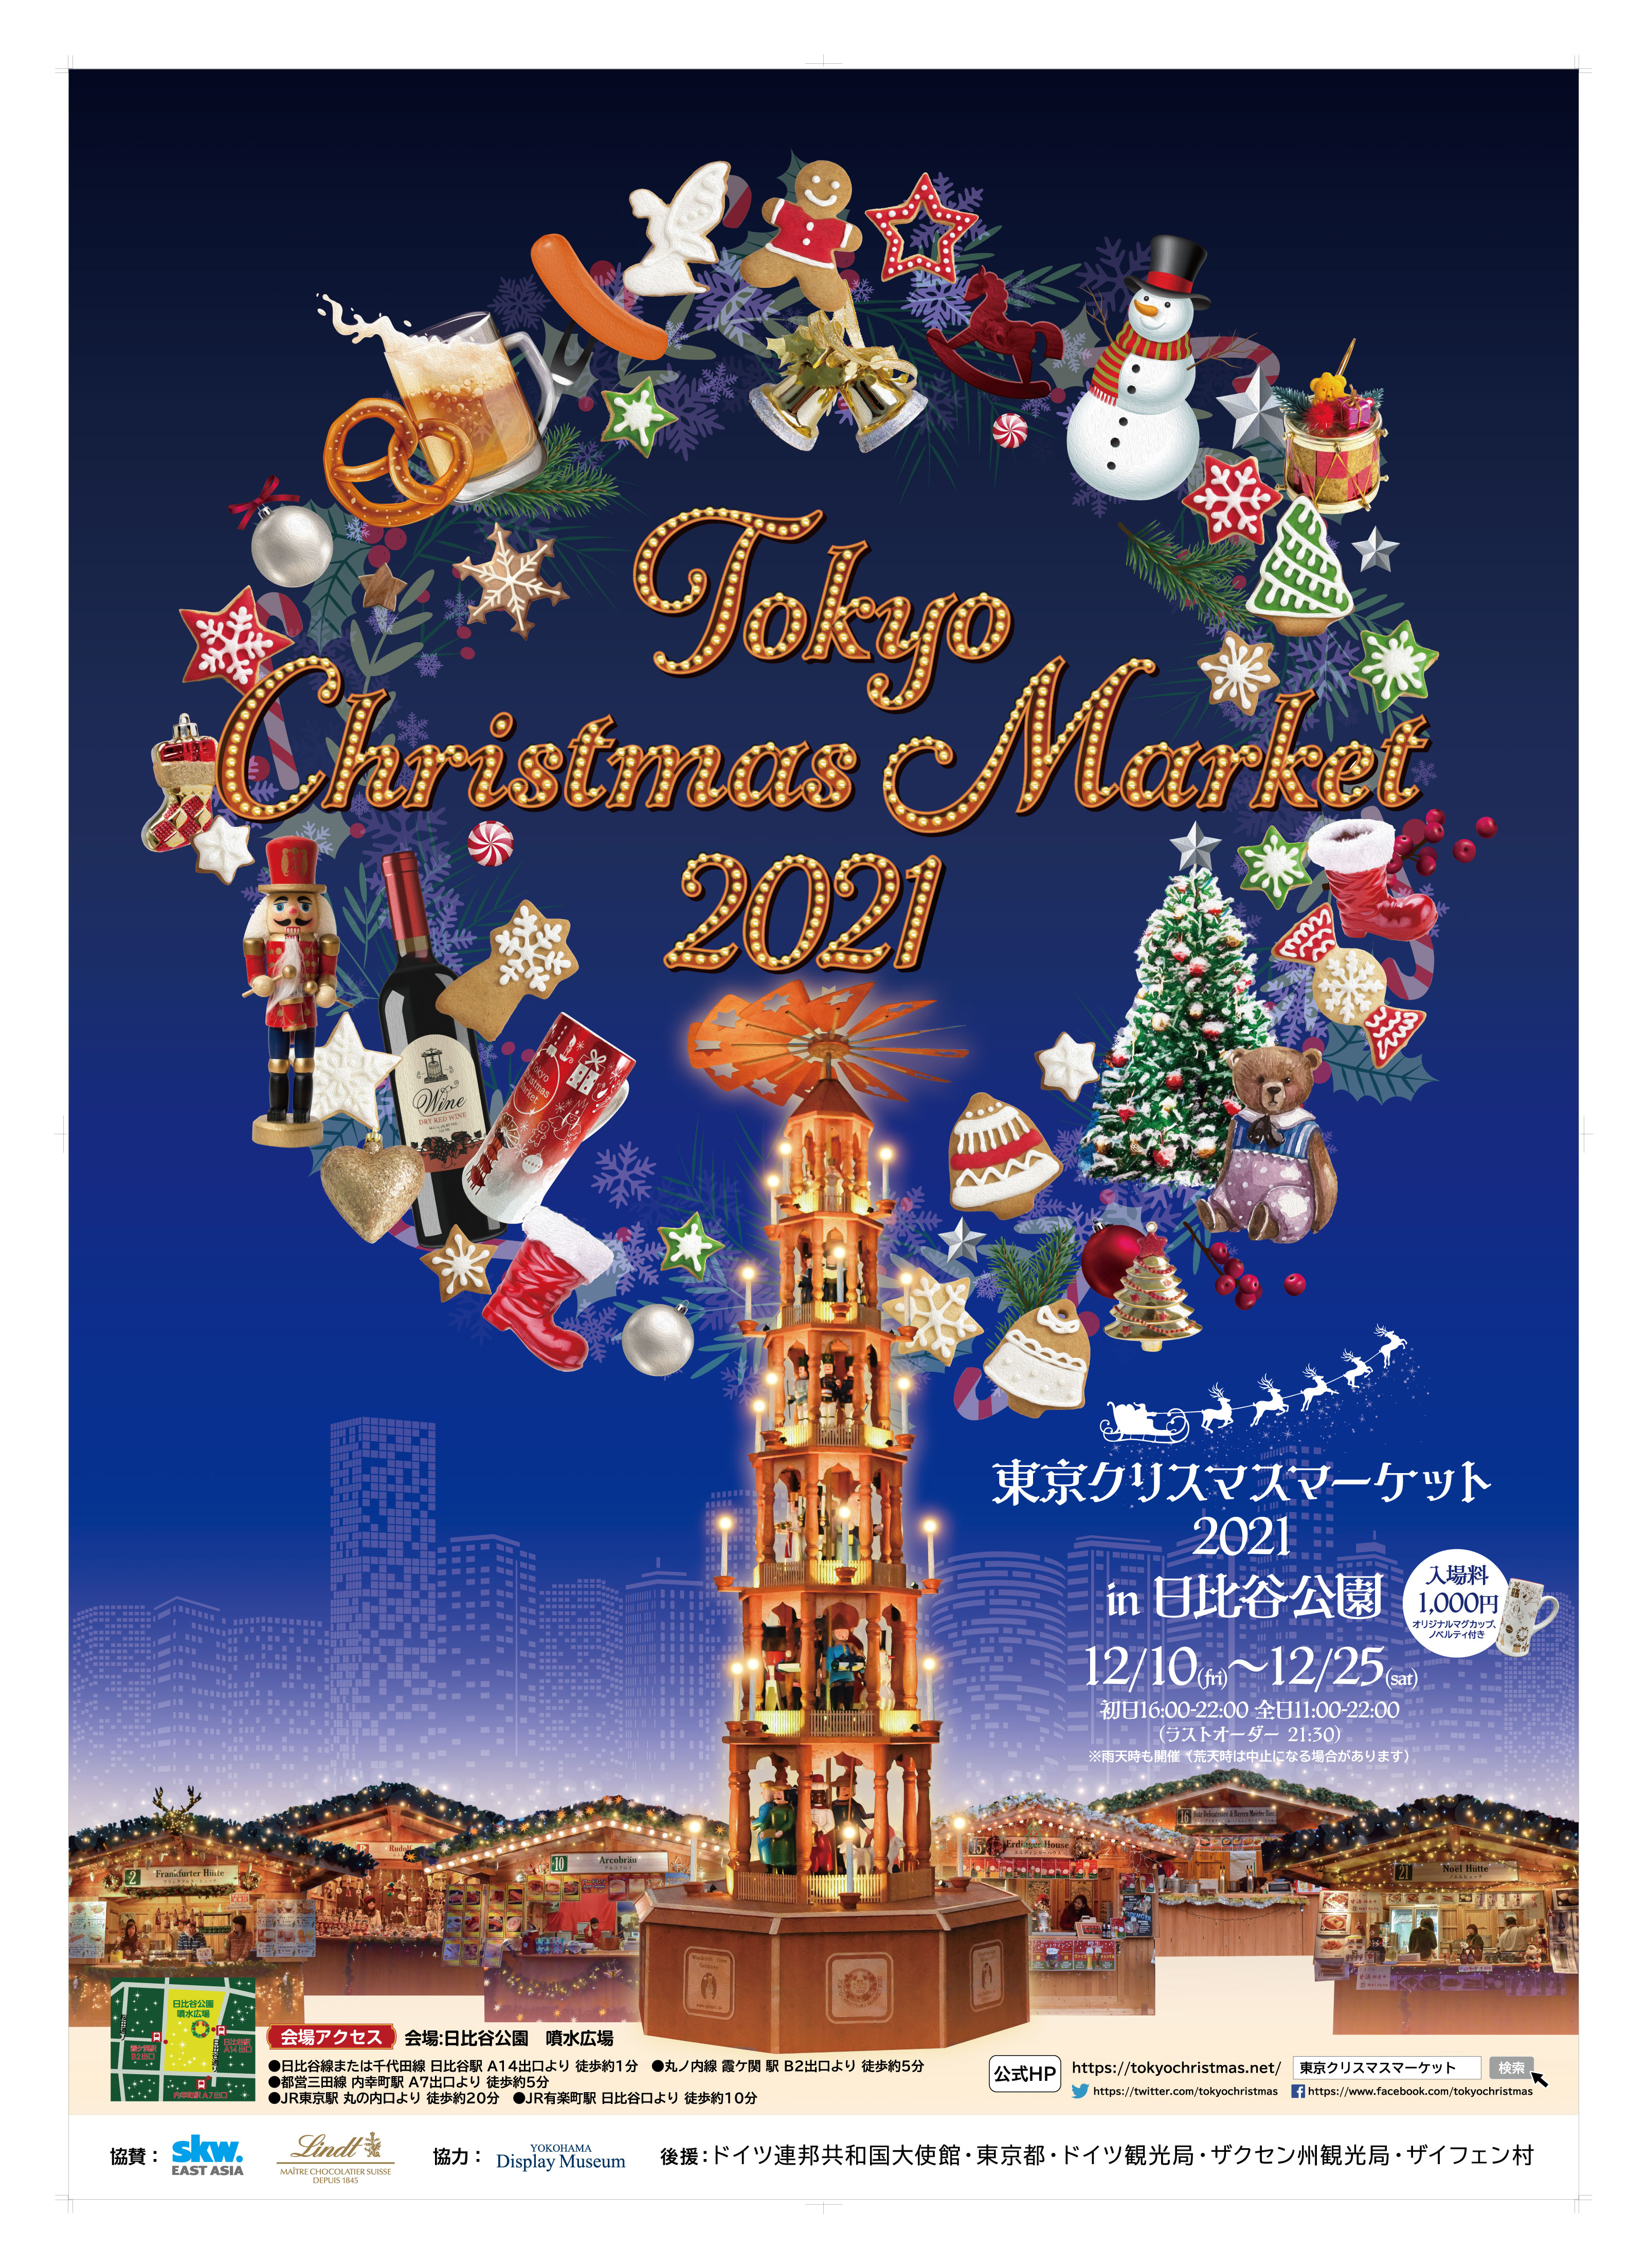 中世から続くヨーロッパの伝統的なお祭りが今年も日比谷公園で開催決定!!『東京クリスマスマーケット2021 in日比谷公園』12月10日(金）～25日（土）のサブ画像1